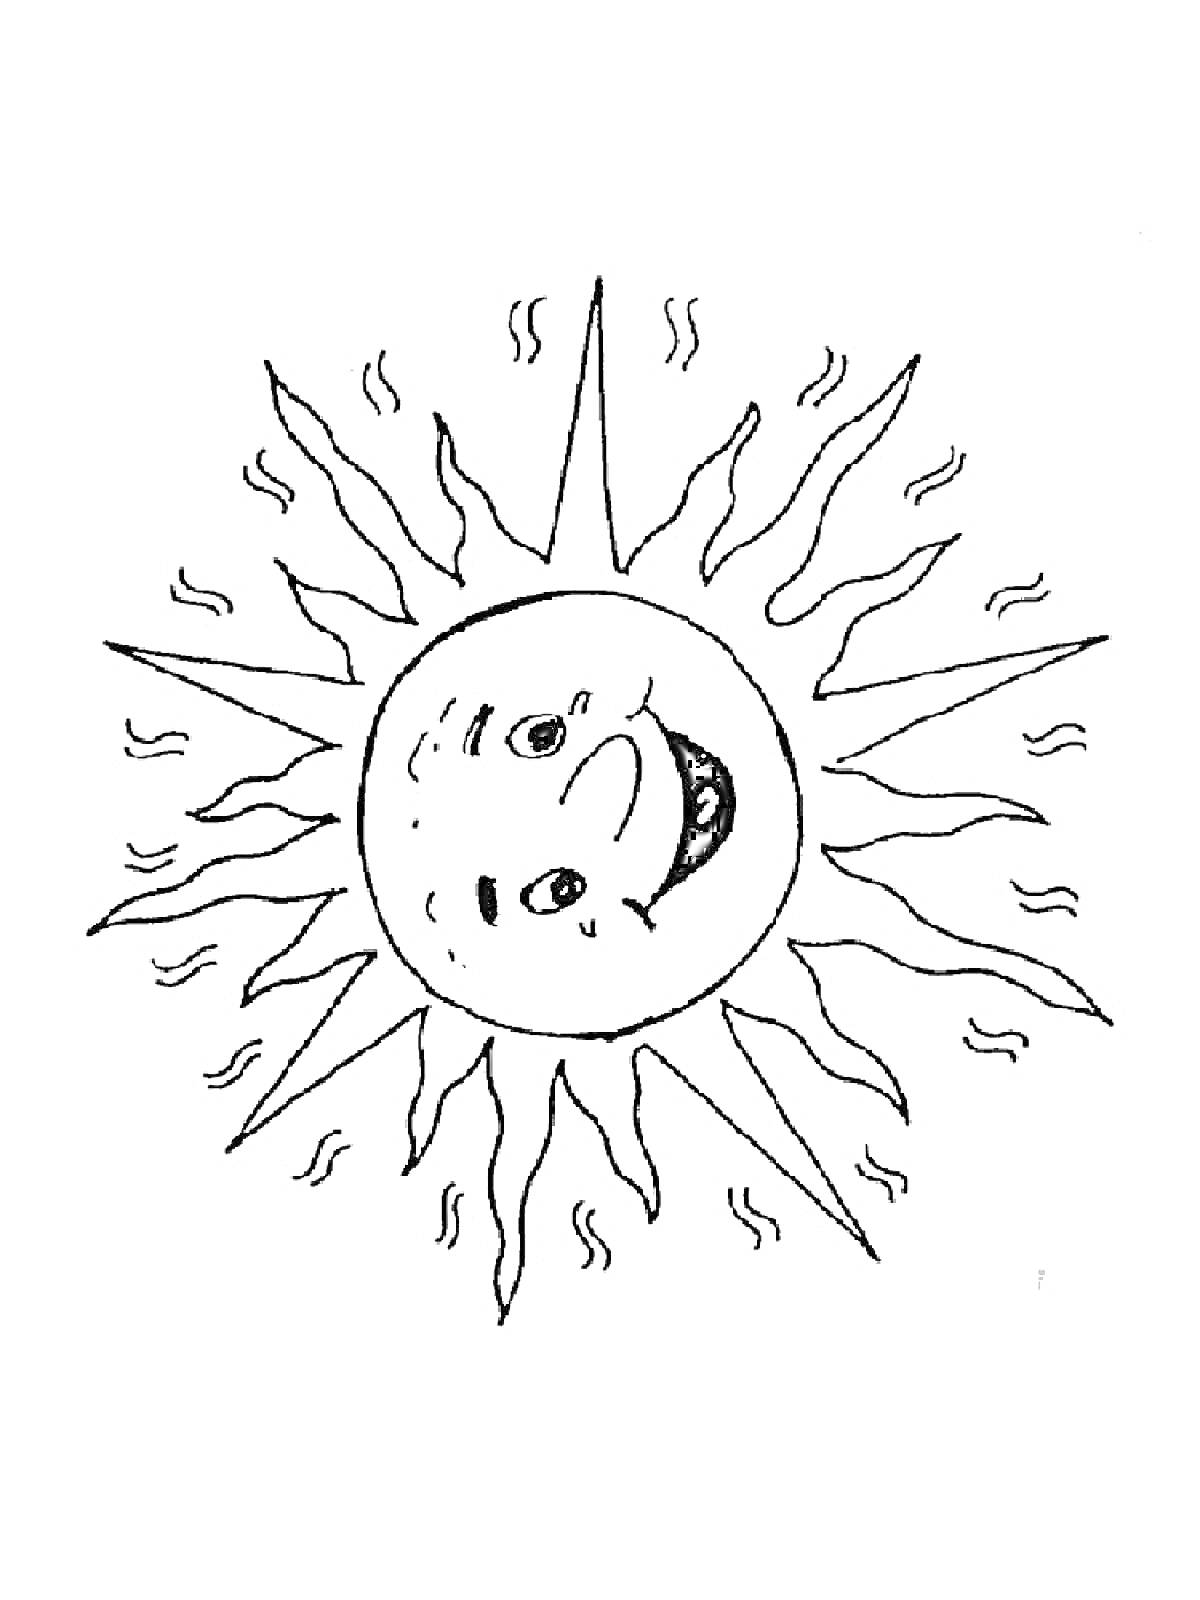 Солнце с лицом и лучами, символизирующими тепло